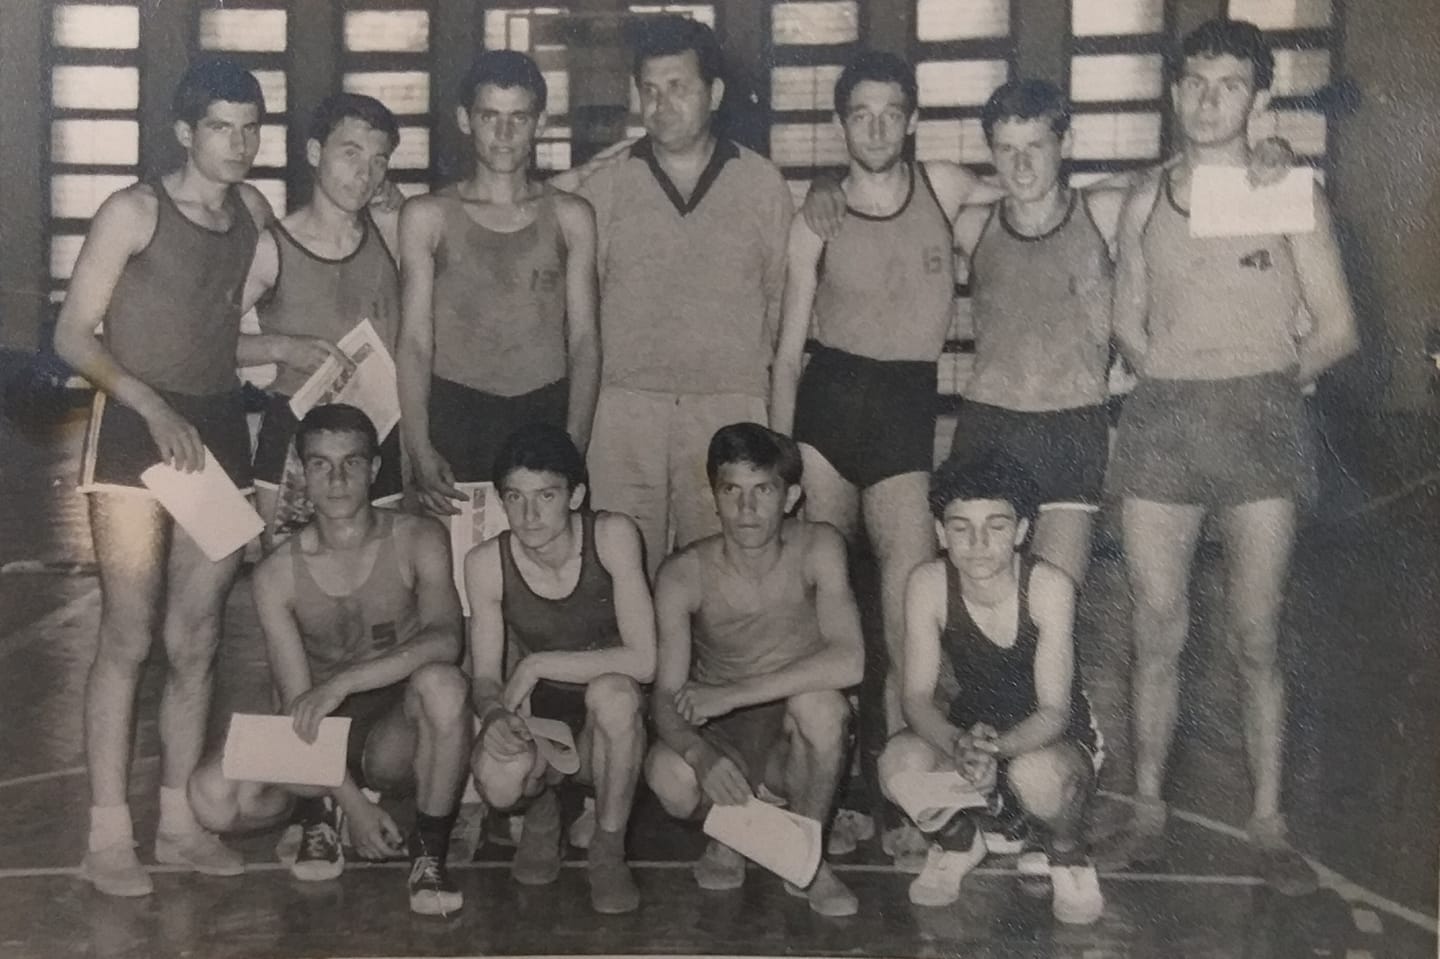 Historia e basketbollit në Durrës/ Të ngjallim sërish Dhimitraq Gogën dhe djemtë e tij